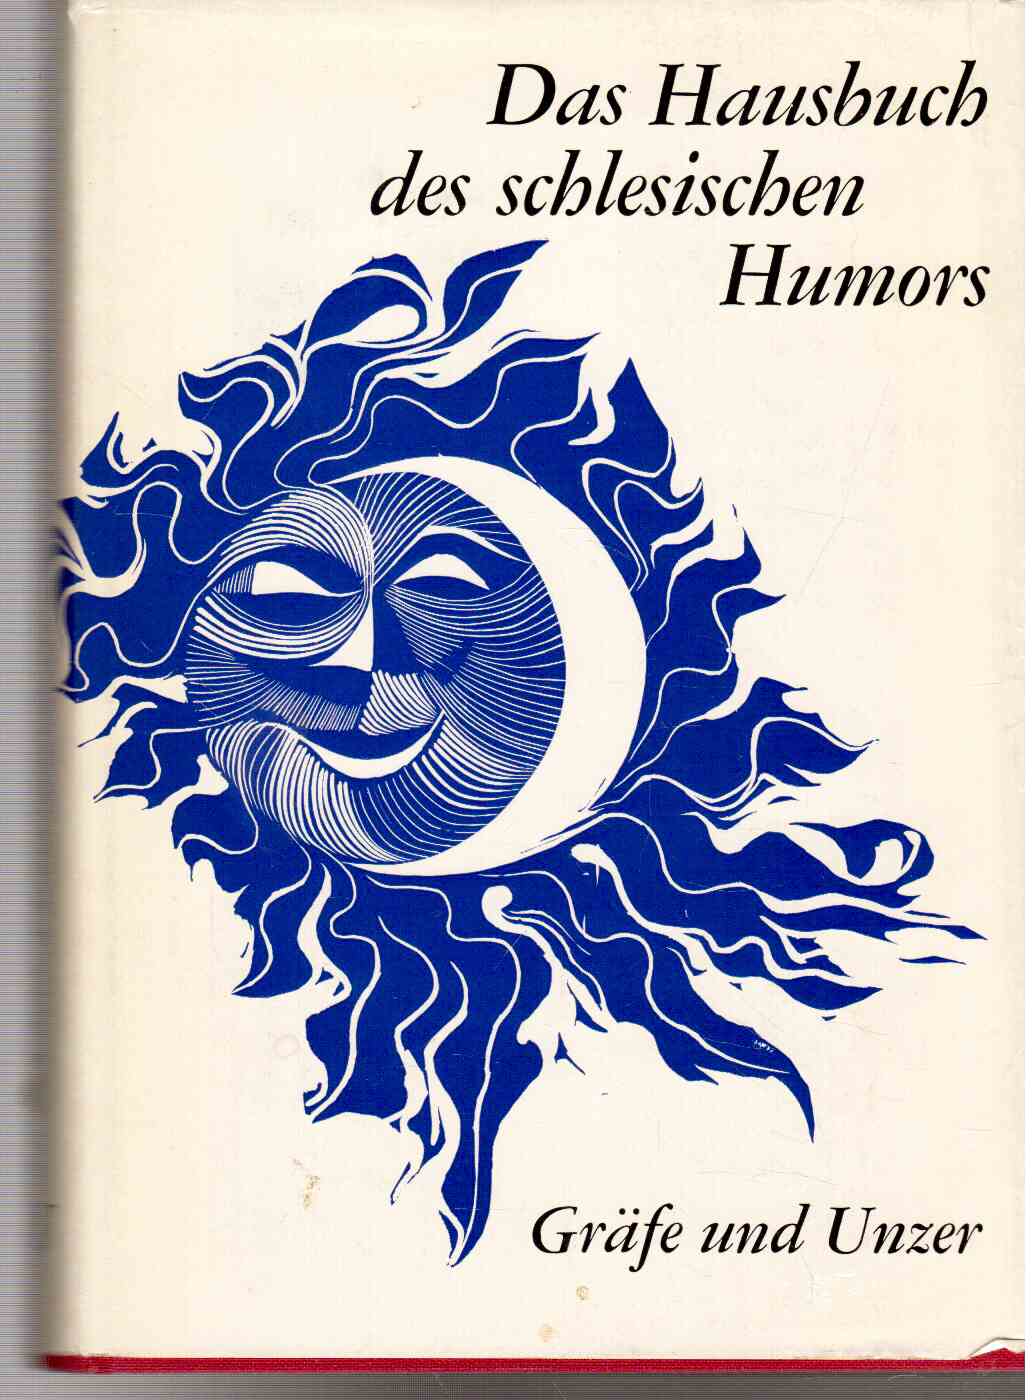 Das Hausbuch des schlesischen Humors